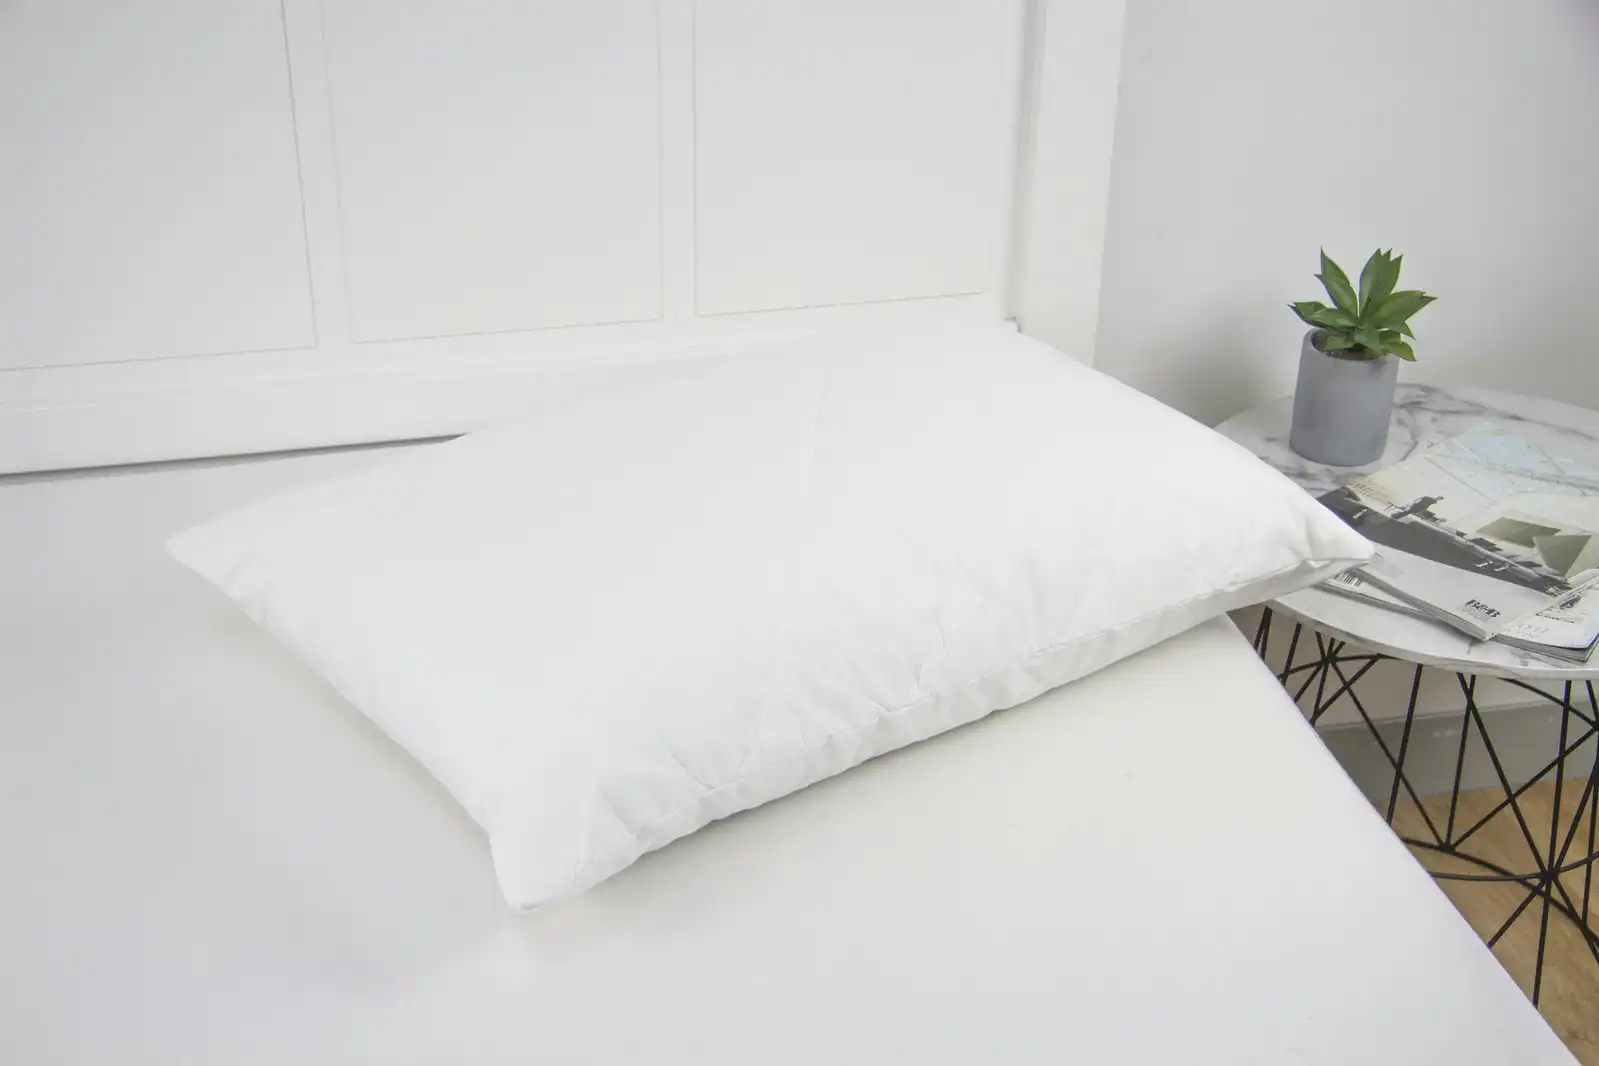 Ardor 100GSM Cotton Bed Pillow 48x73cm Protector Case Cover Home Bedding White